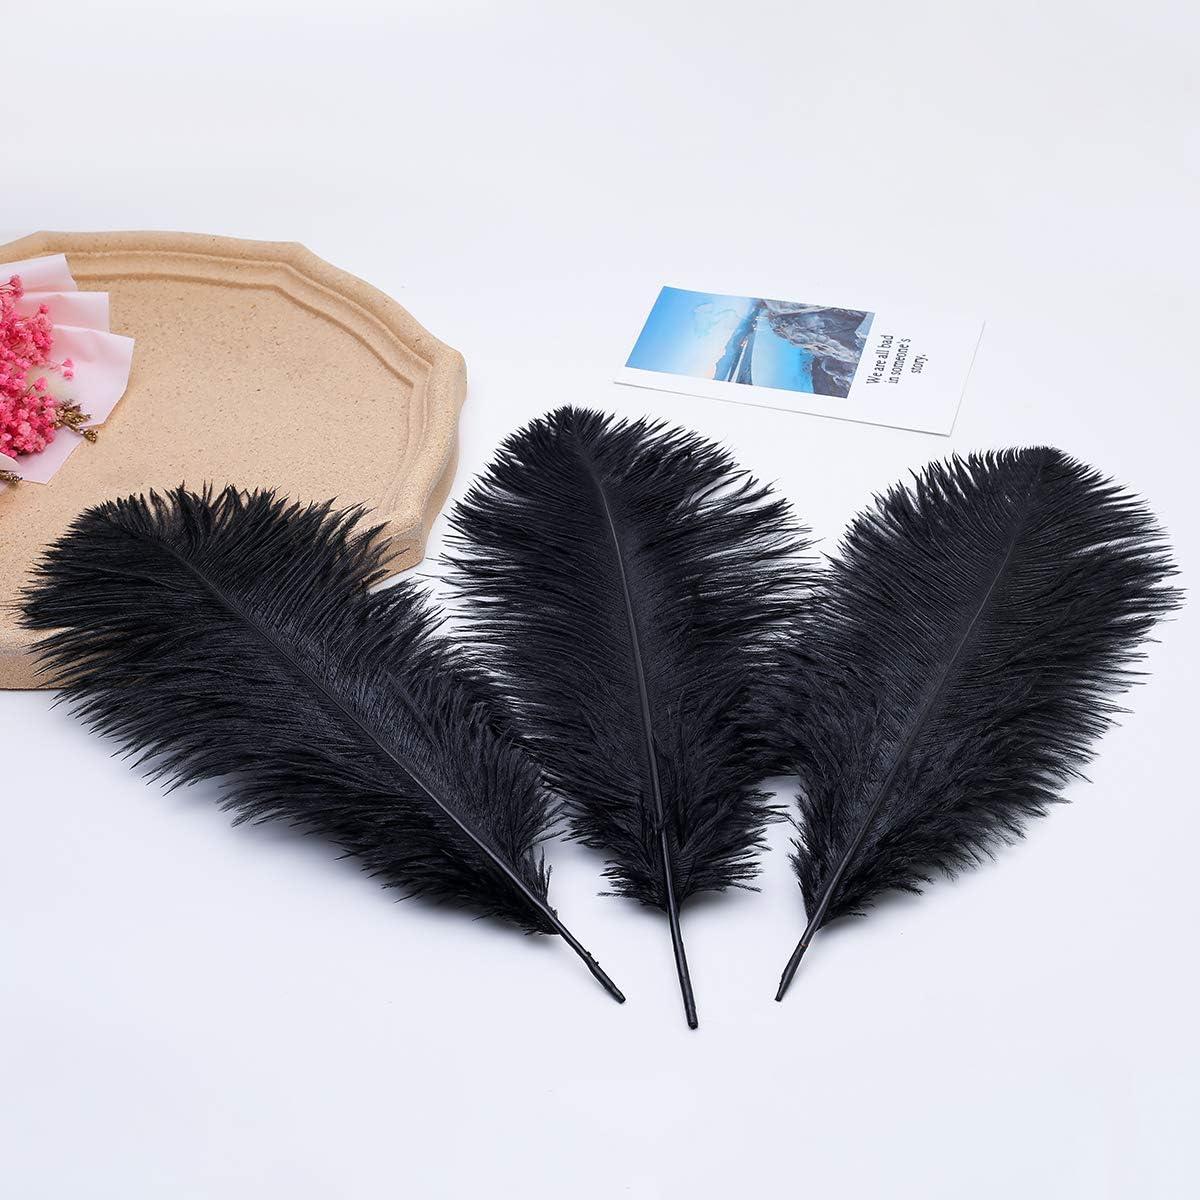 13-15 Fabulous Natural Ostrich Feathers-12PCS - Black